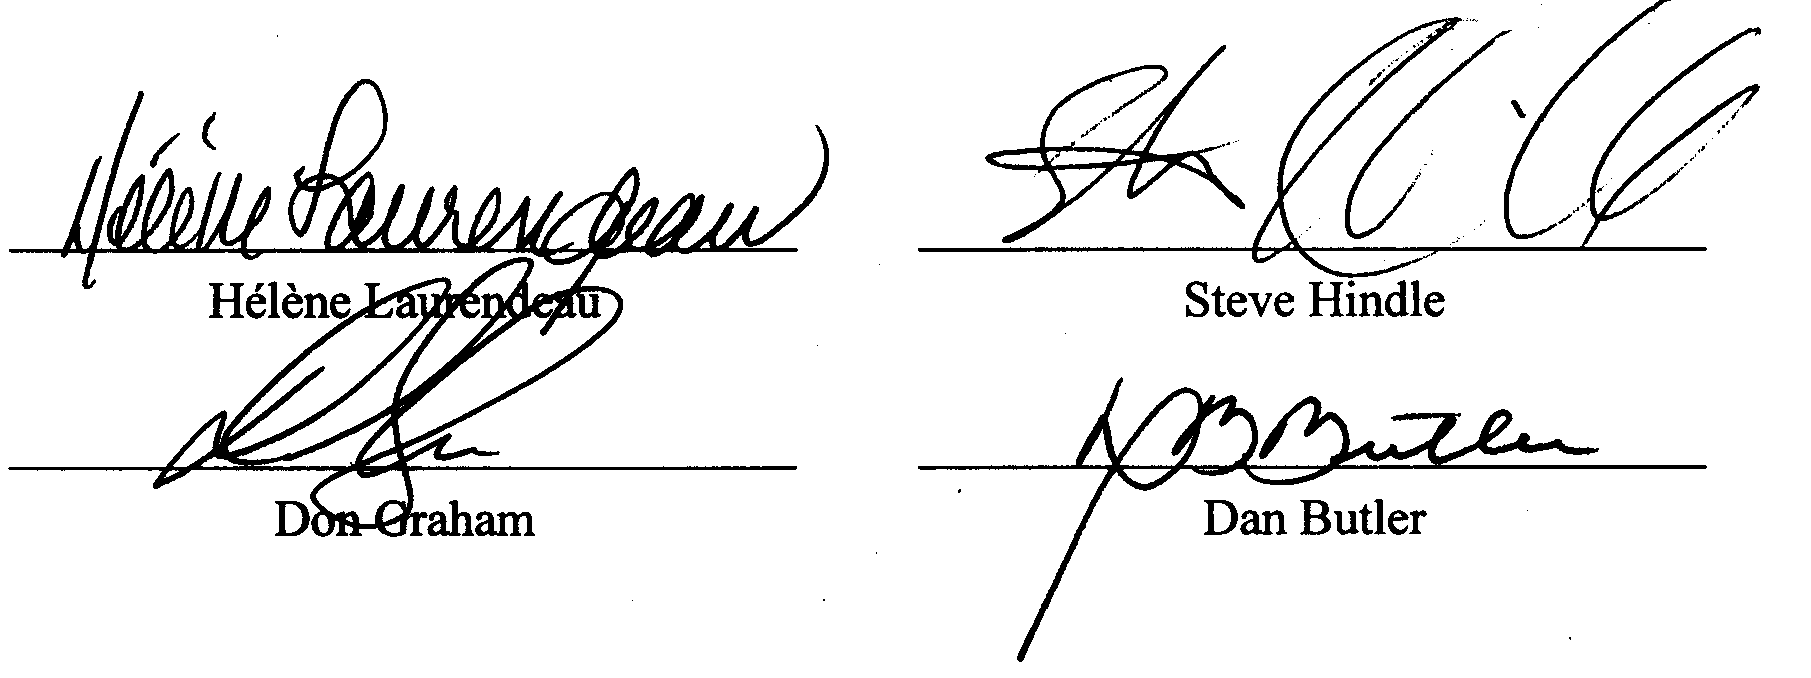 signatures of Hélène Laurendeau, Don Graham, Steve Hindle and Dan Butler